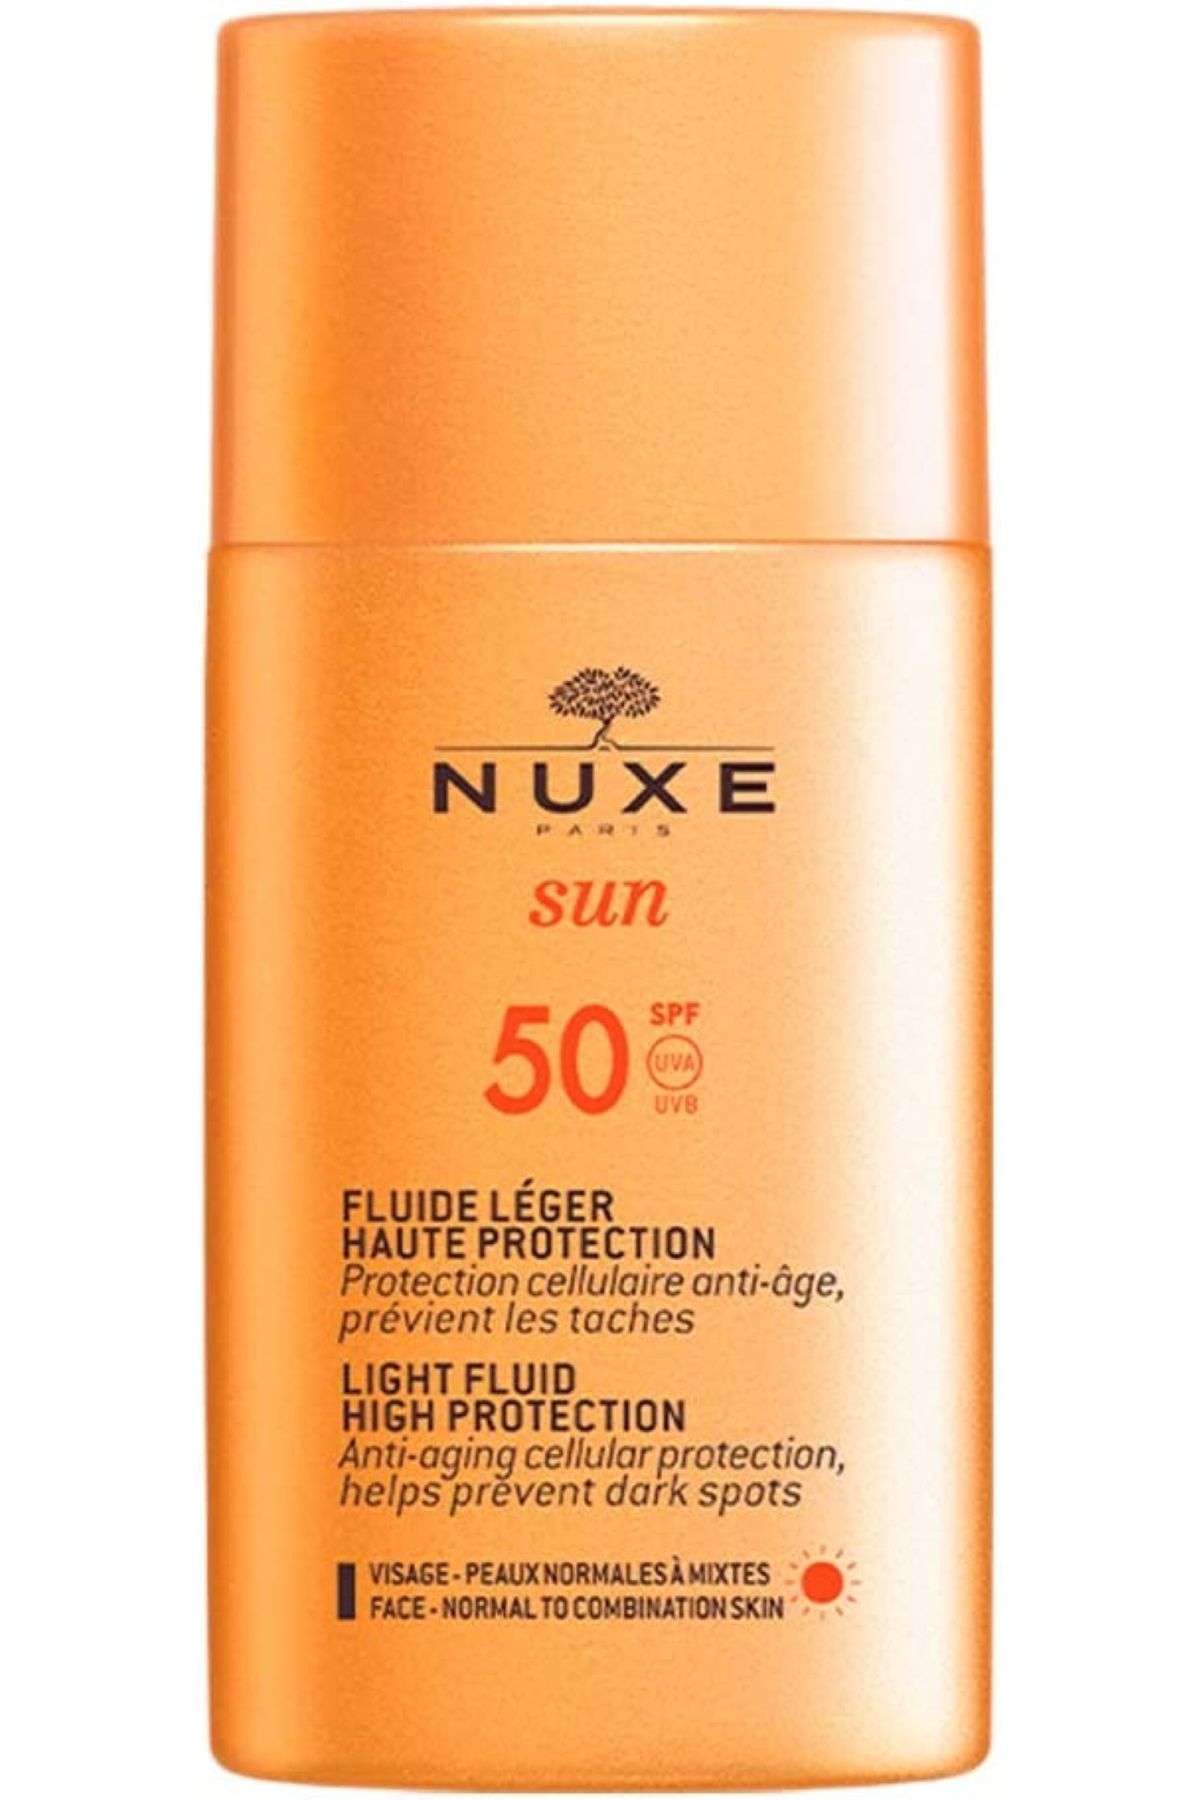 Nuxe Sun Light Fluid High Protection 50 SPF Yüz Güneş Kremi 50 ML CYT479431317413131364131313167413